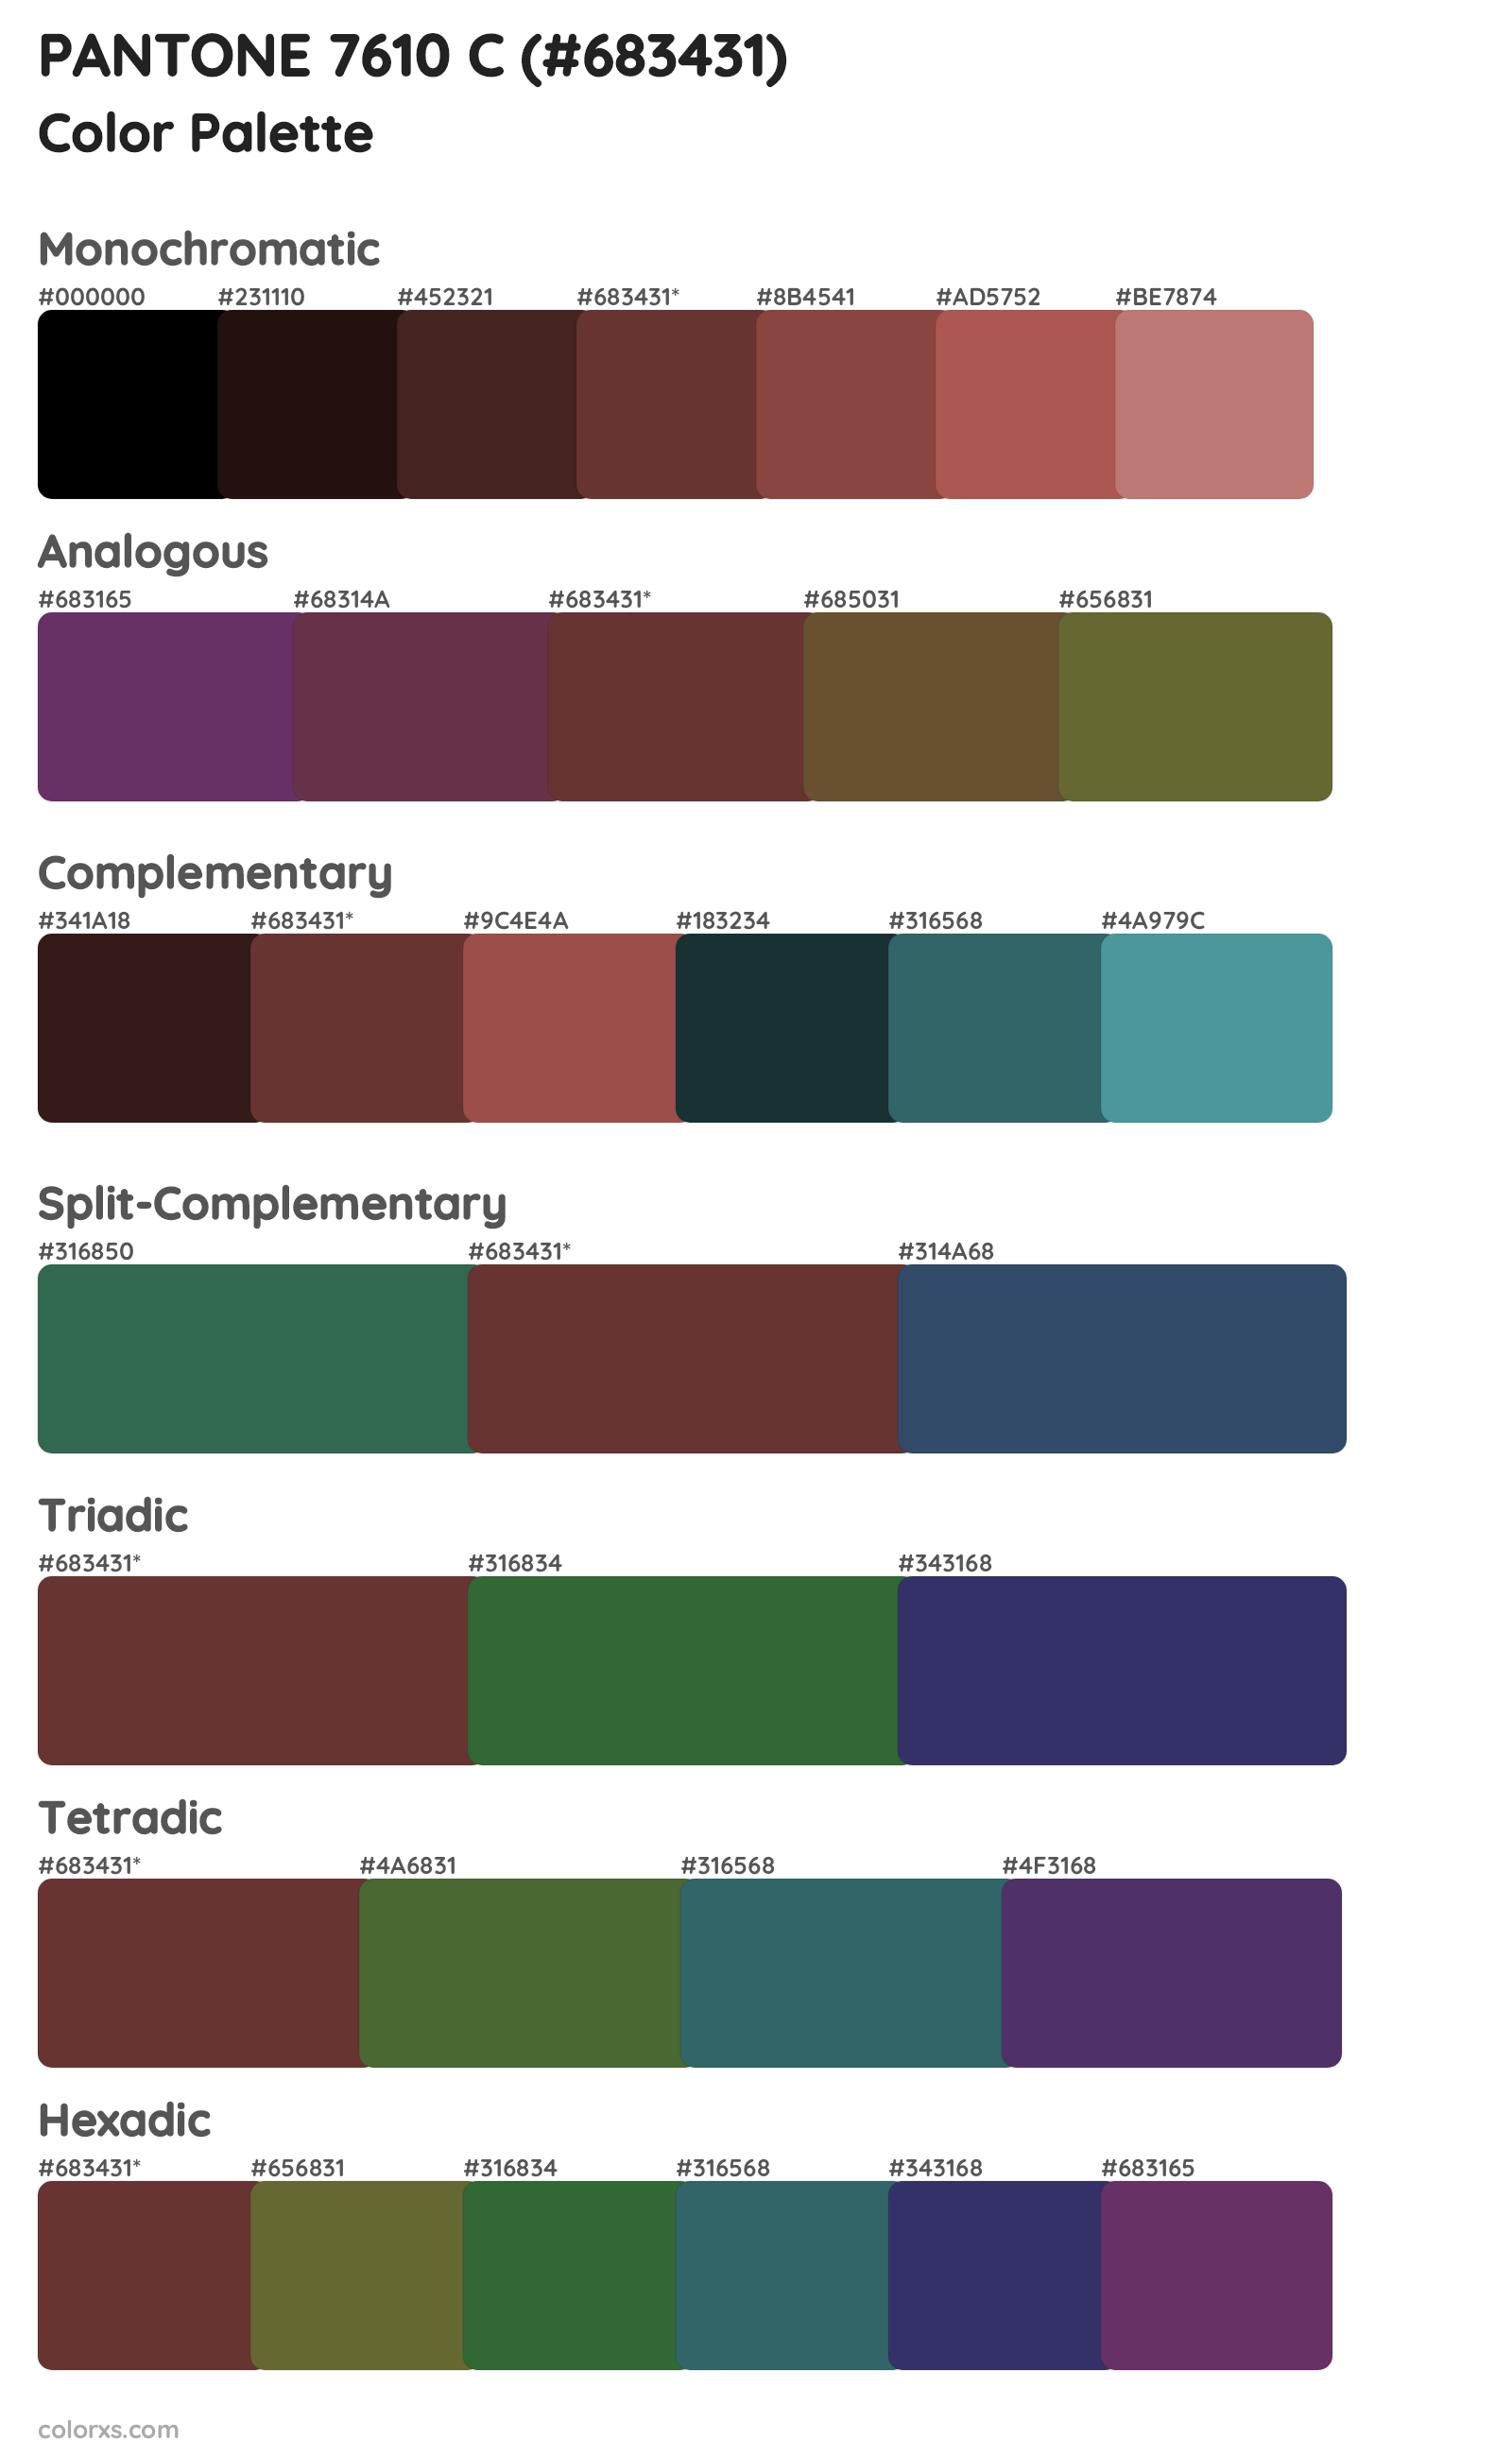 PANTONE 7610 C Color Scheme Palettes